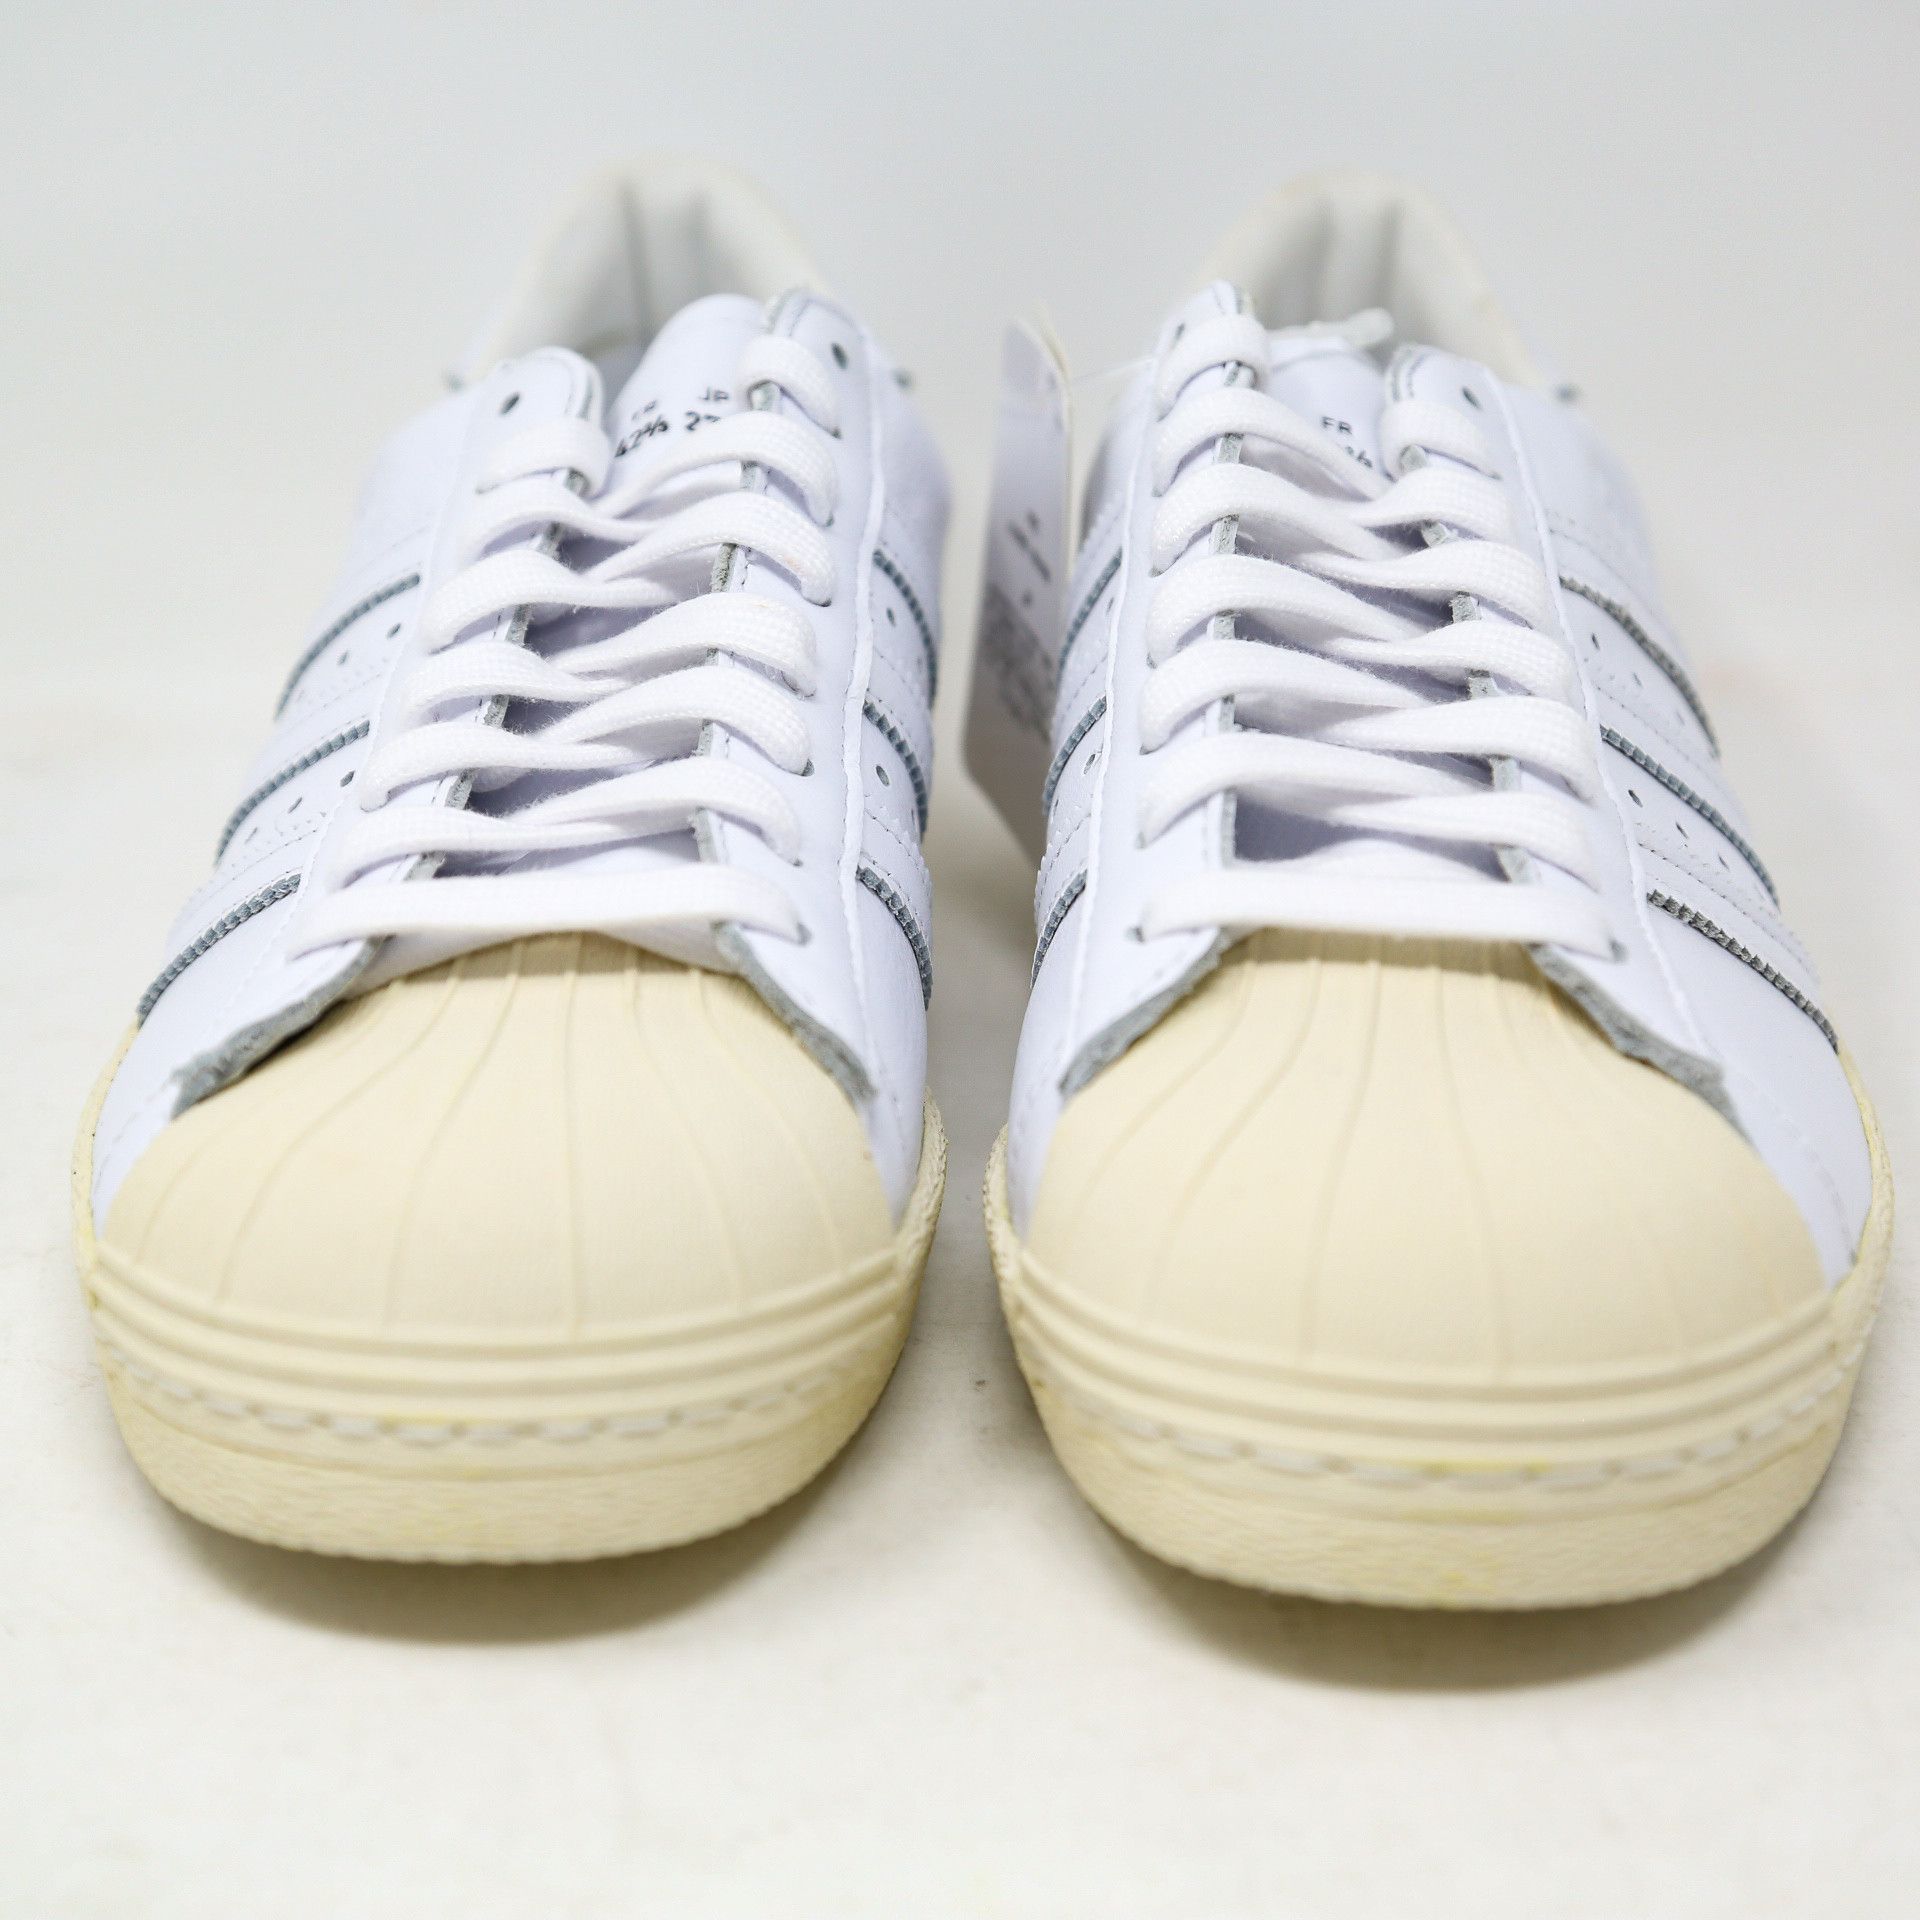 Adidas Superstar 80s Recon Off-White EE7392 Retro size 11 Size US 11 / EU 44 - 4 Thumbnail